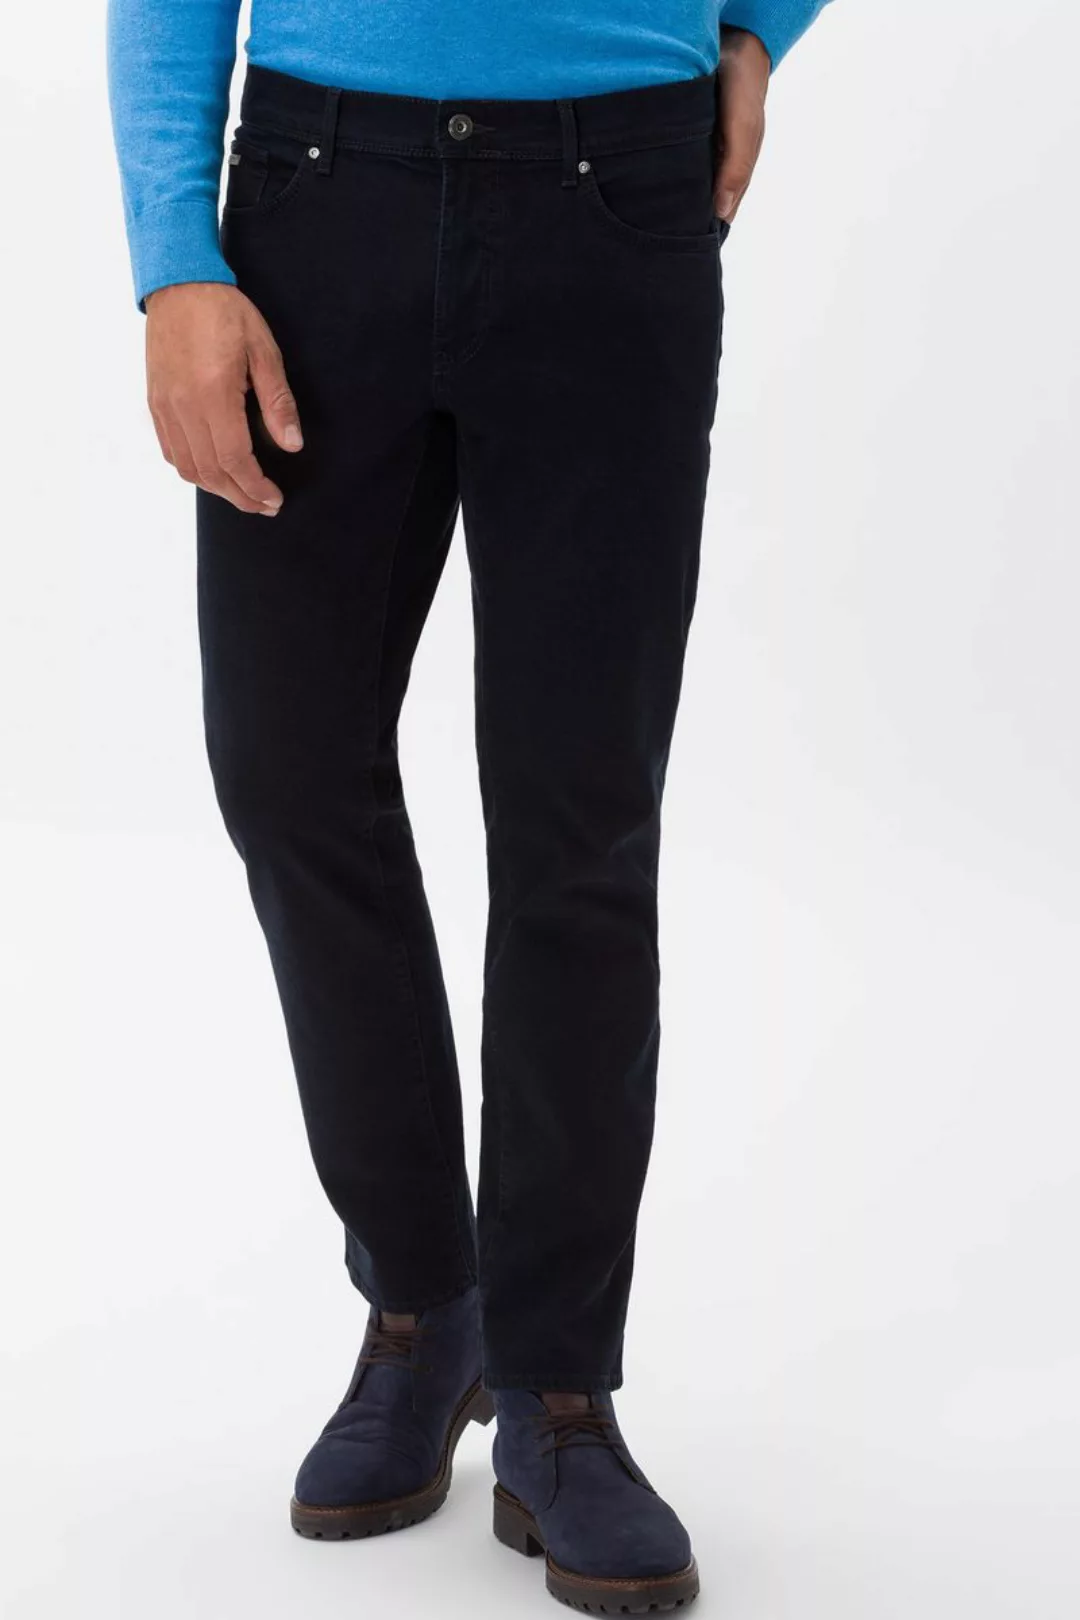 Brax Cadiz Jeans Navy Blau - Größe W 35 - L 36 günstig online kaufen